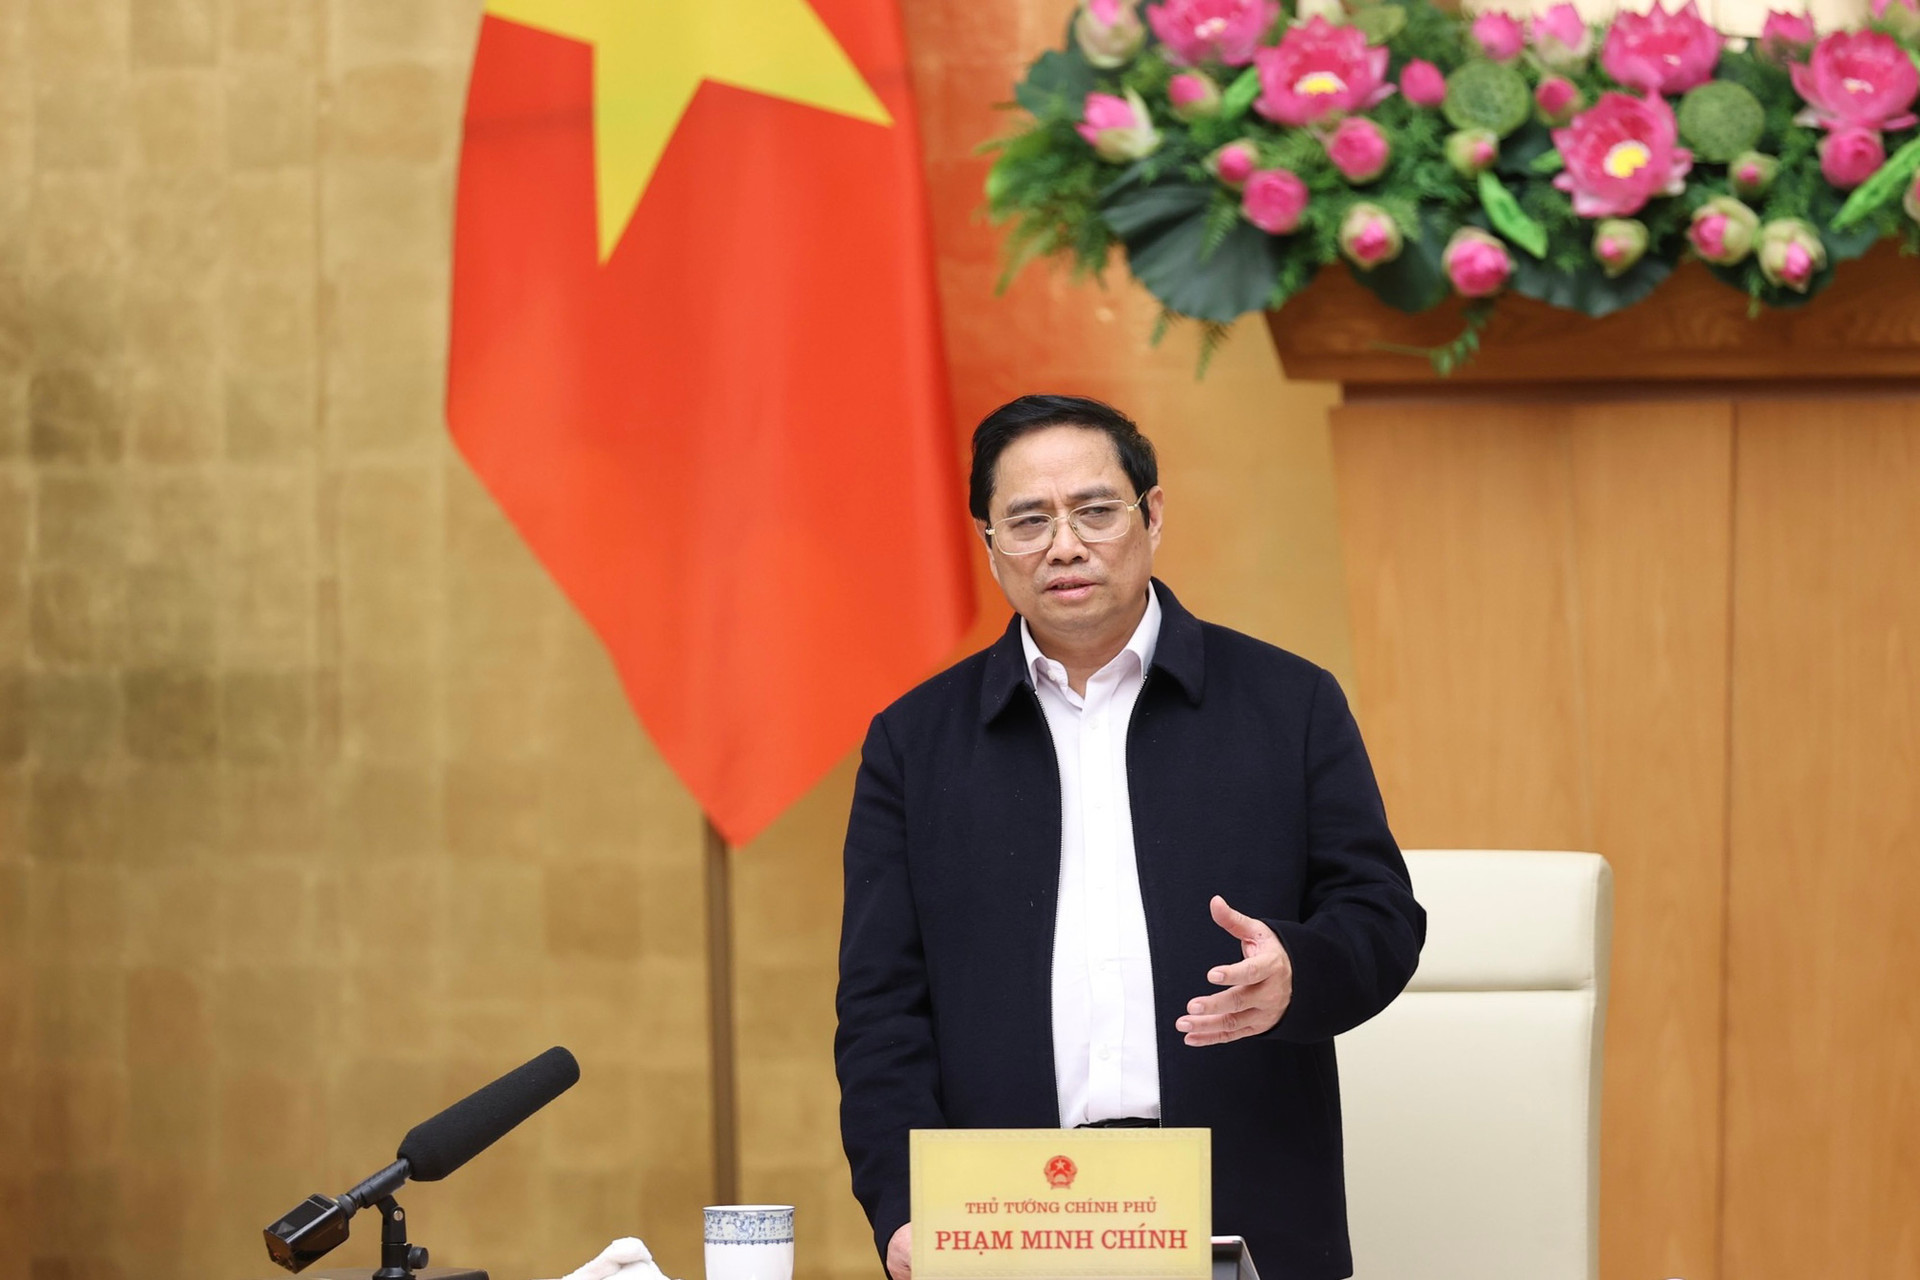 Thủ tướng Phạm Minh Chính: Triển khai các nhiệm vụ trọng tâm, trọng điểm, làm việc nào dứt việc đó - Ảnh 6.